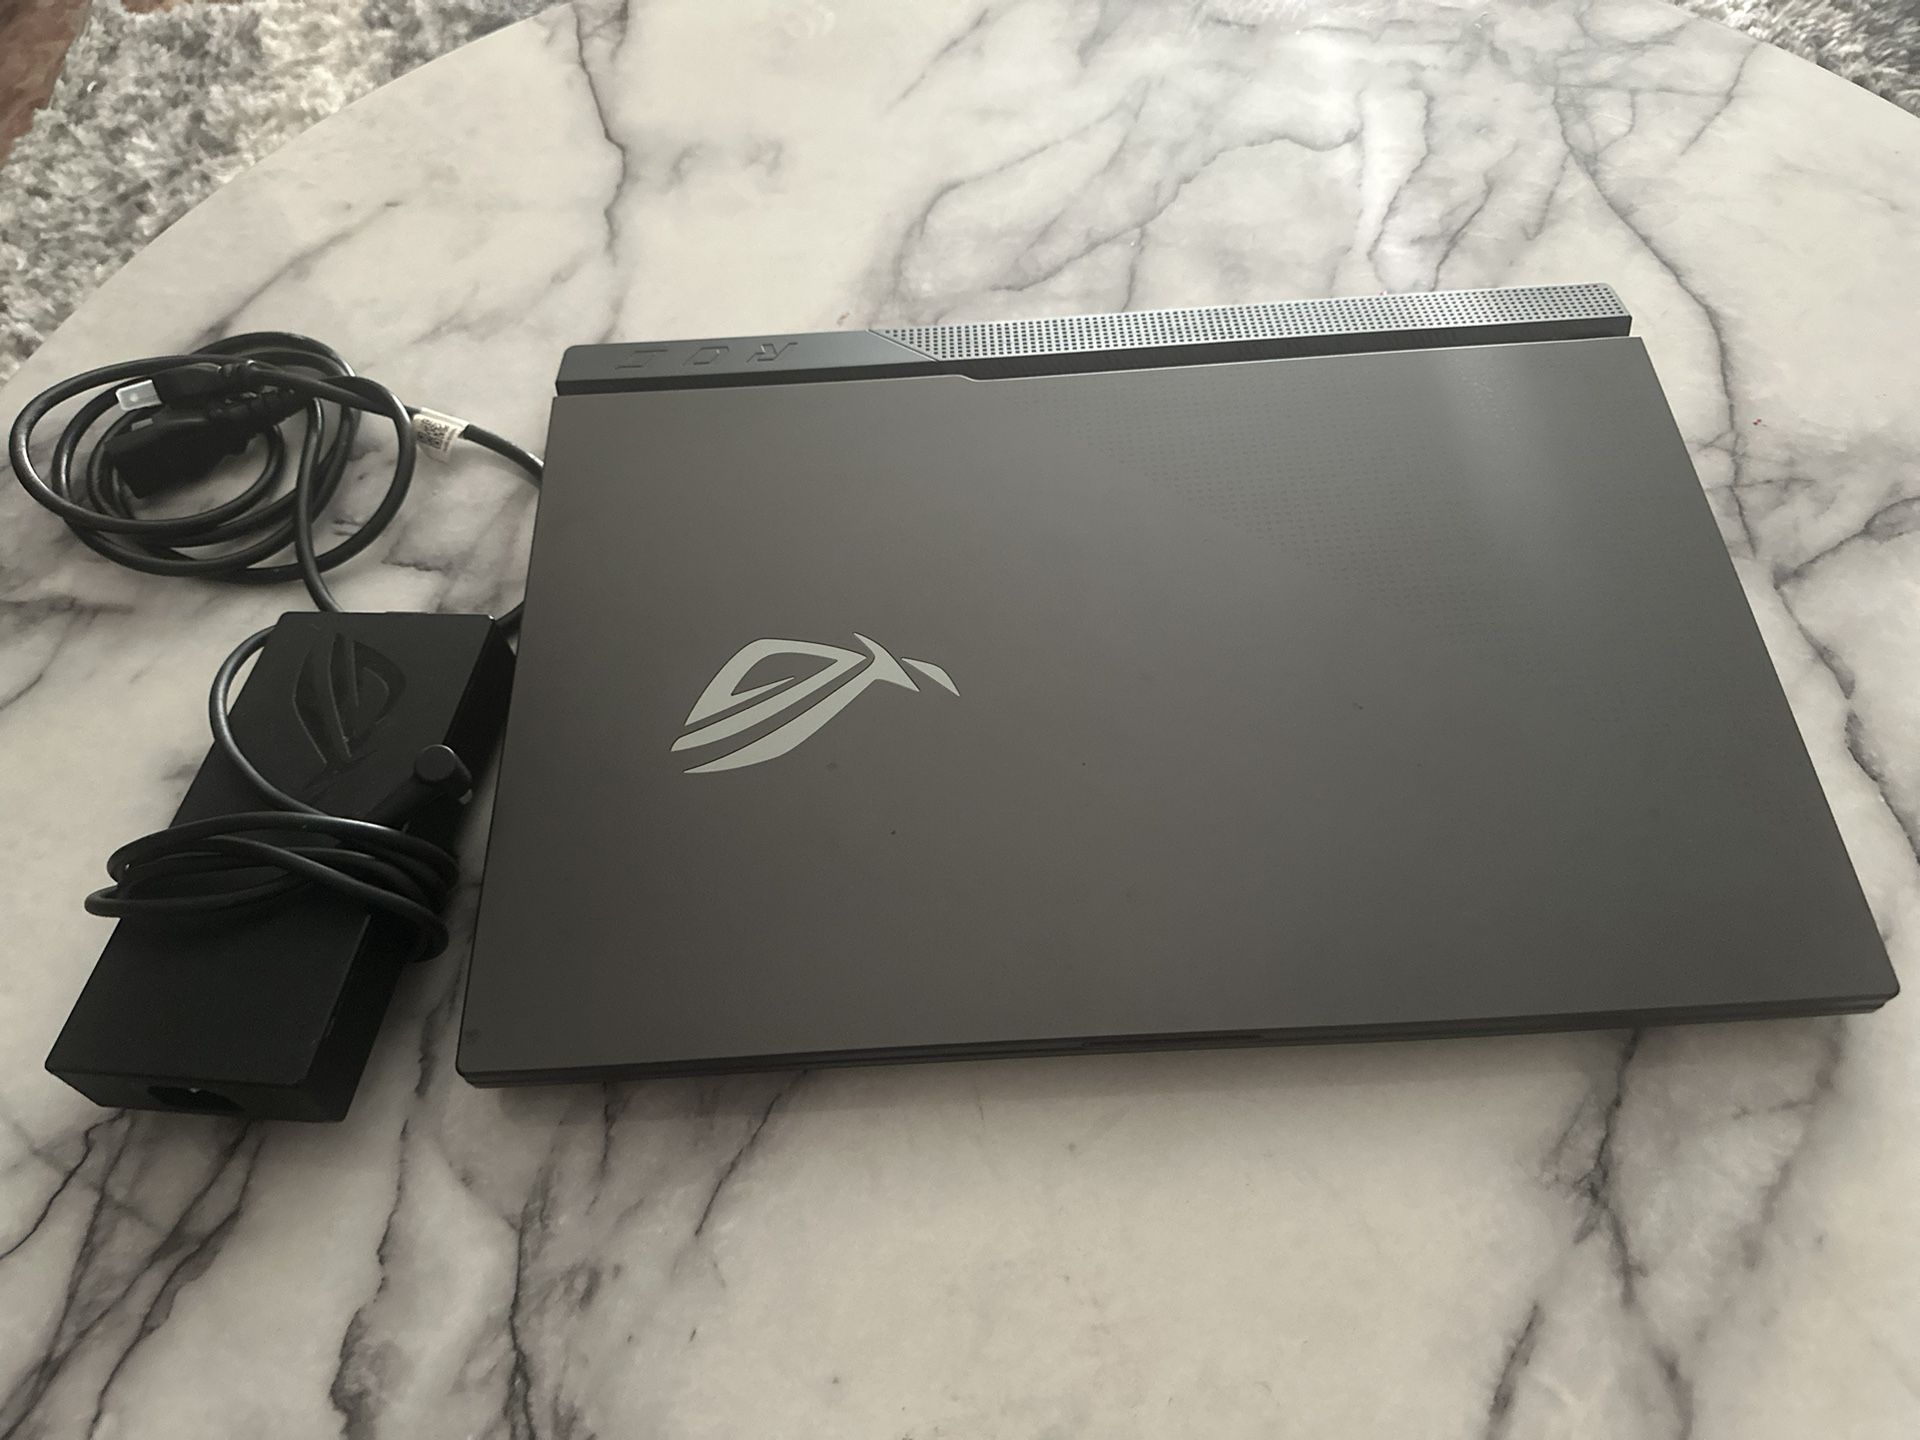 Asus ROG Strix Gaming Laptop 